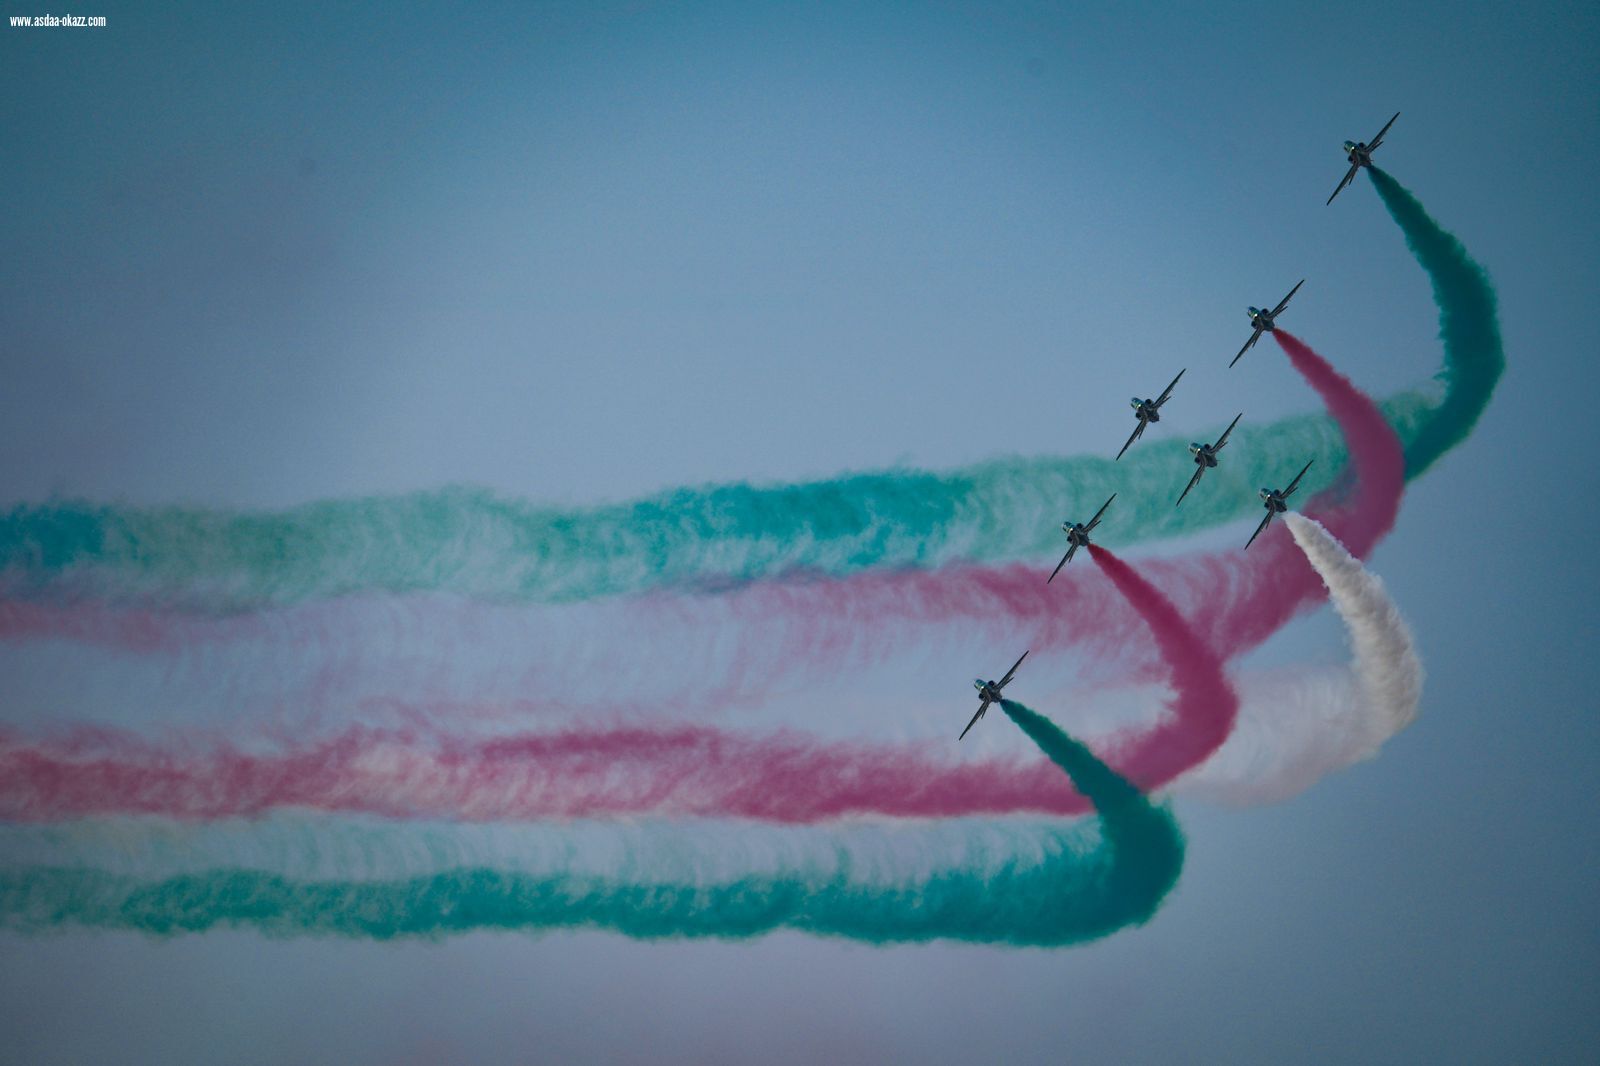 الهيئة العامة للصناعات العسكرية تشارك في معرض البحرين الدولي للطيران